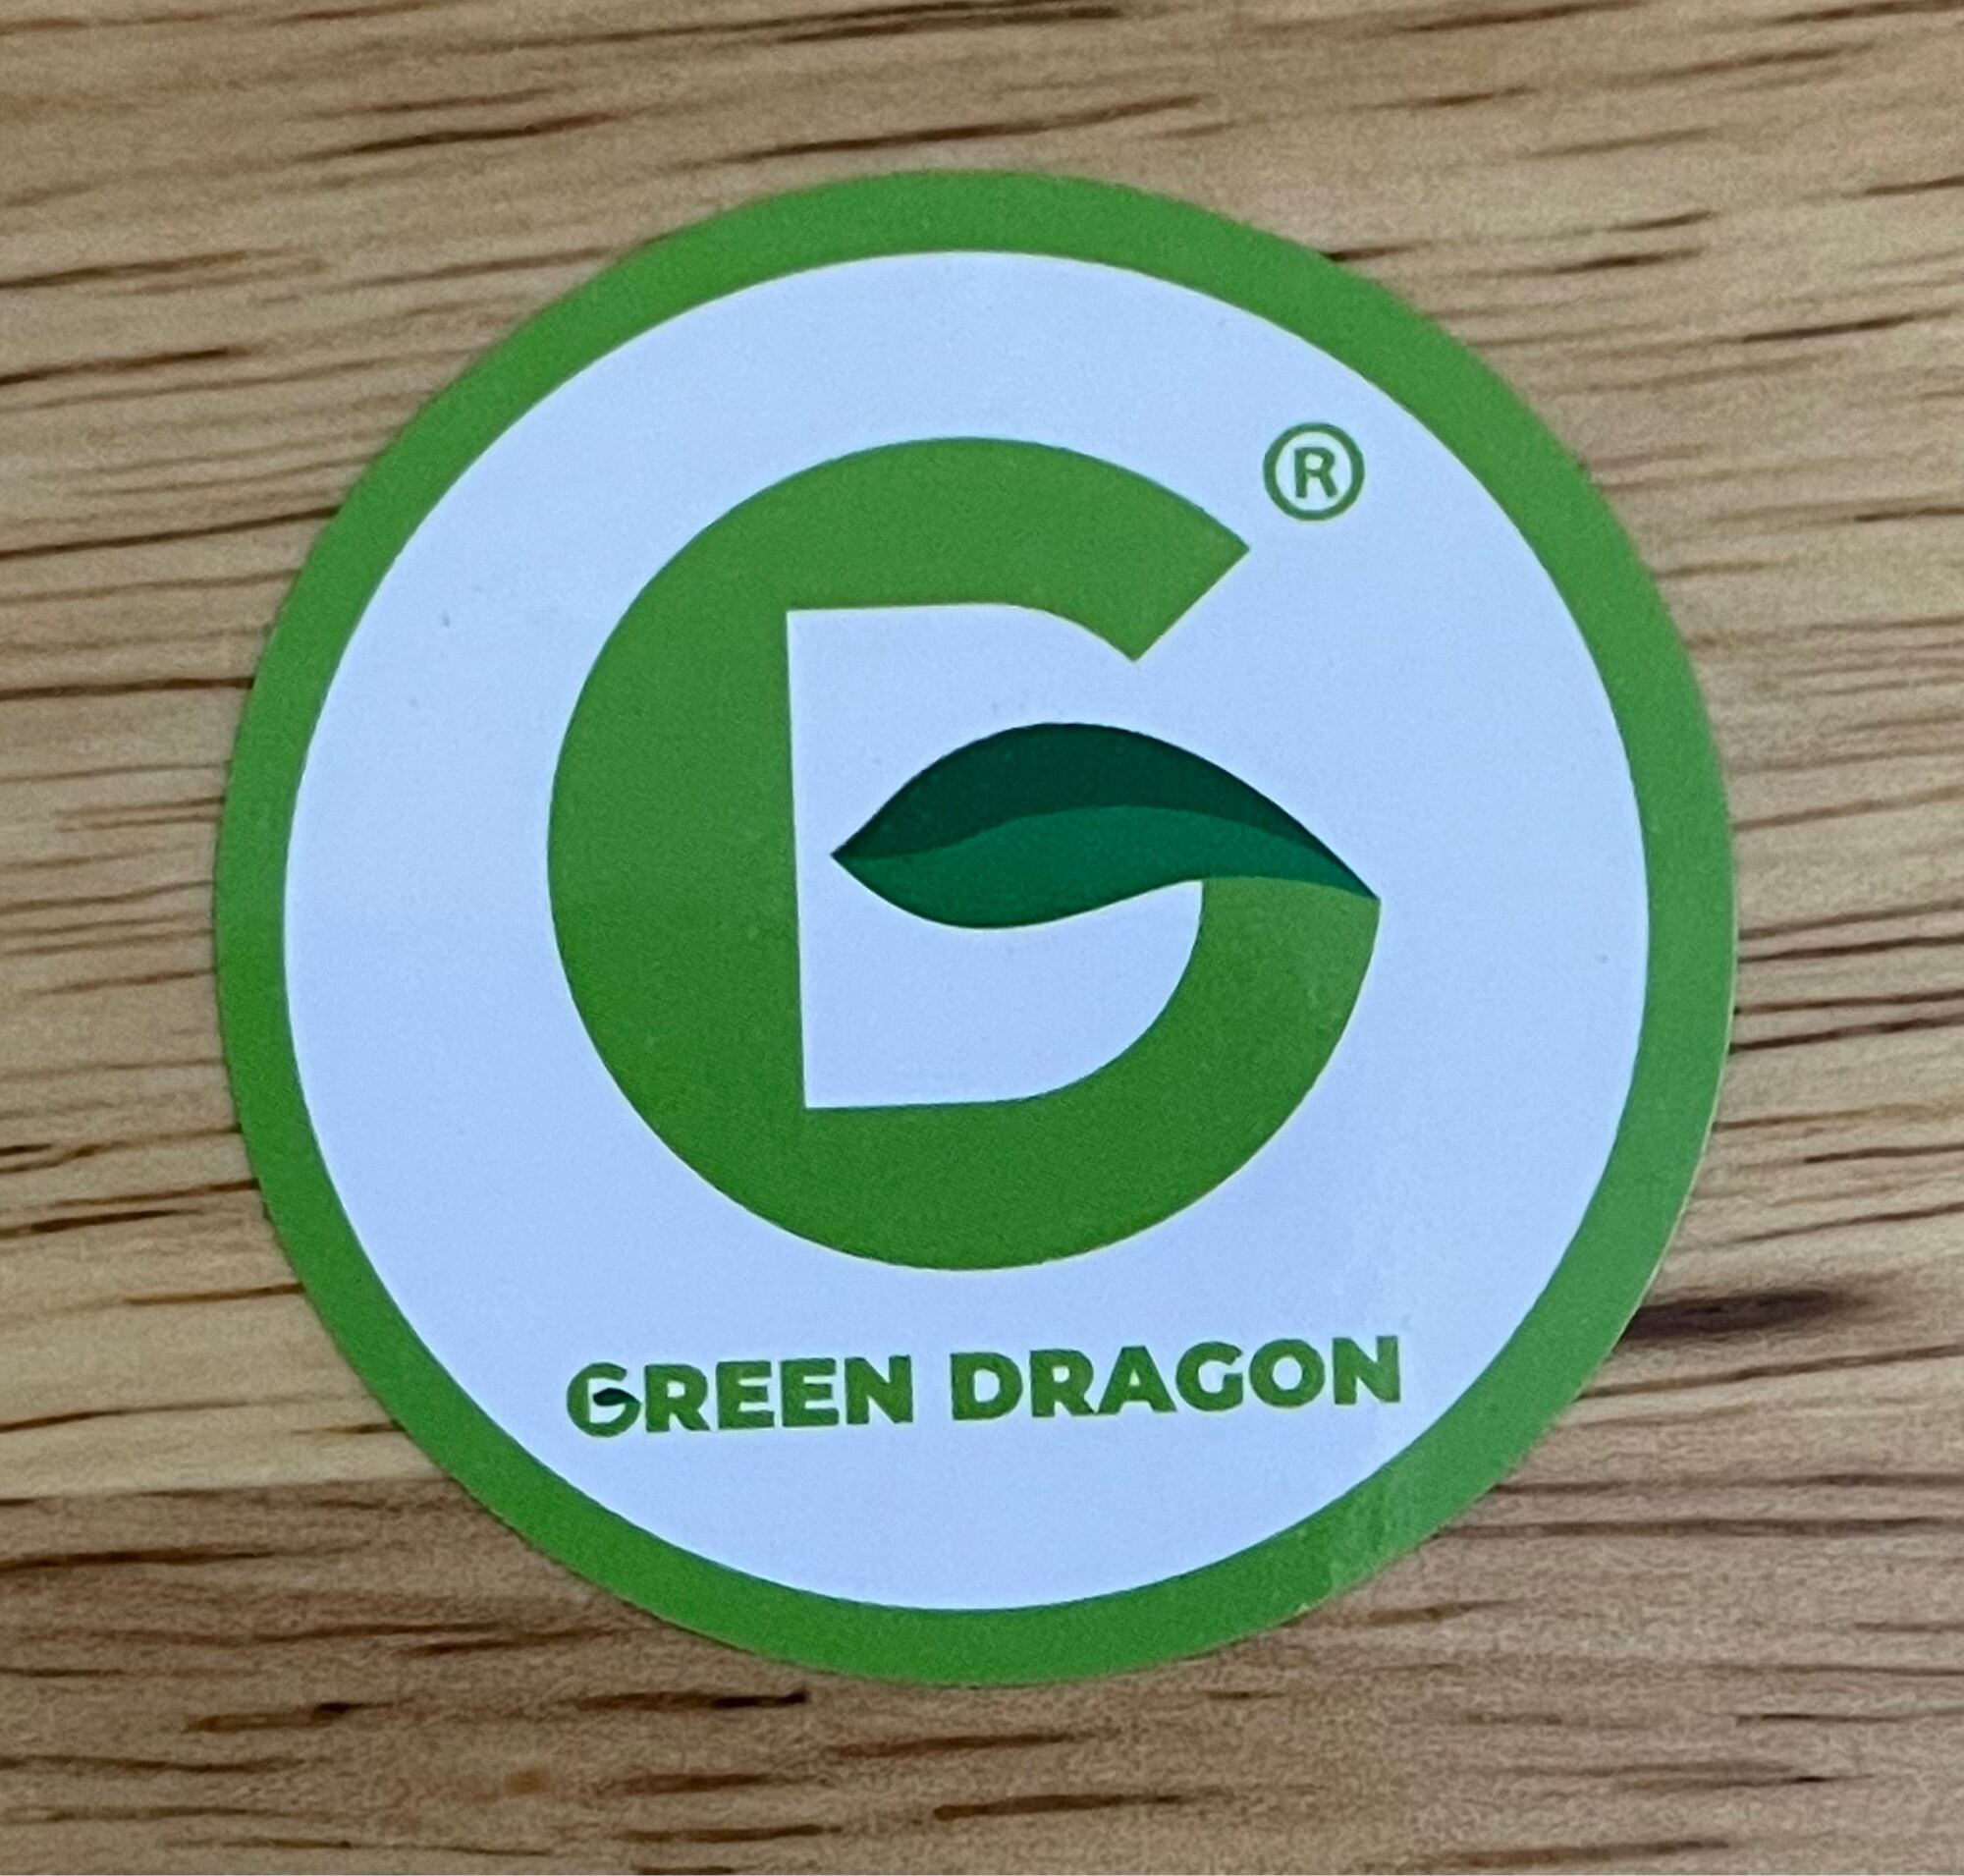 Nước mát max one chính hãng green dragon thái lan